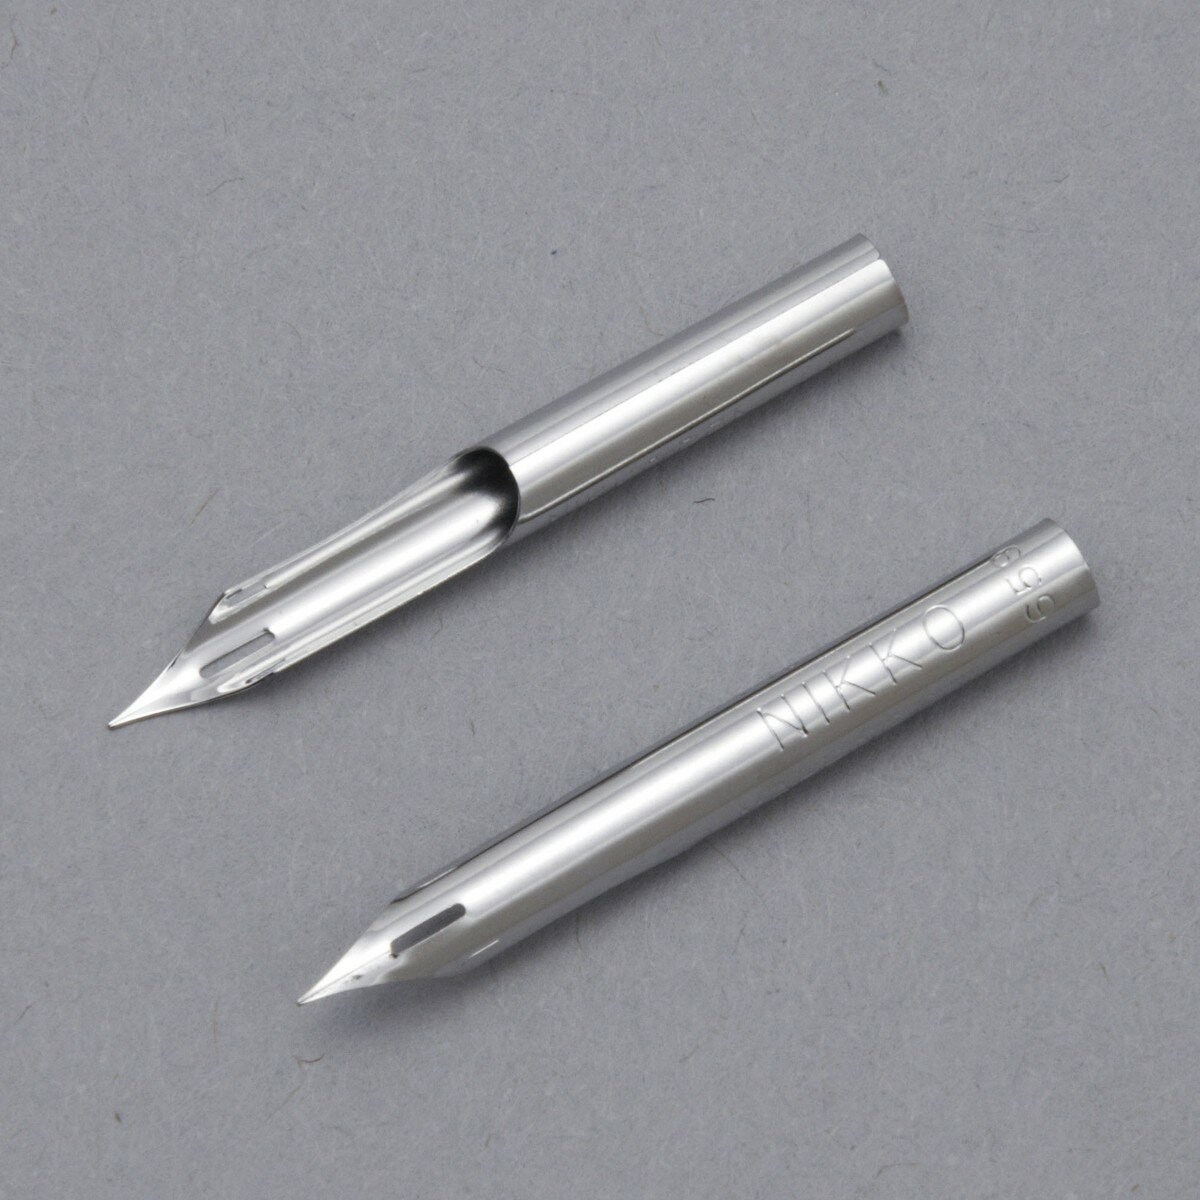 繊細な部分の表現に欠かせない極細線仕様のペンです。